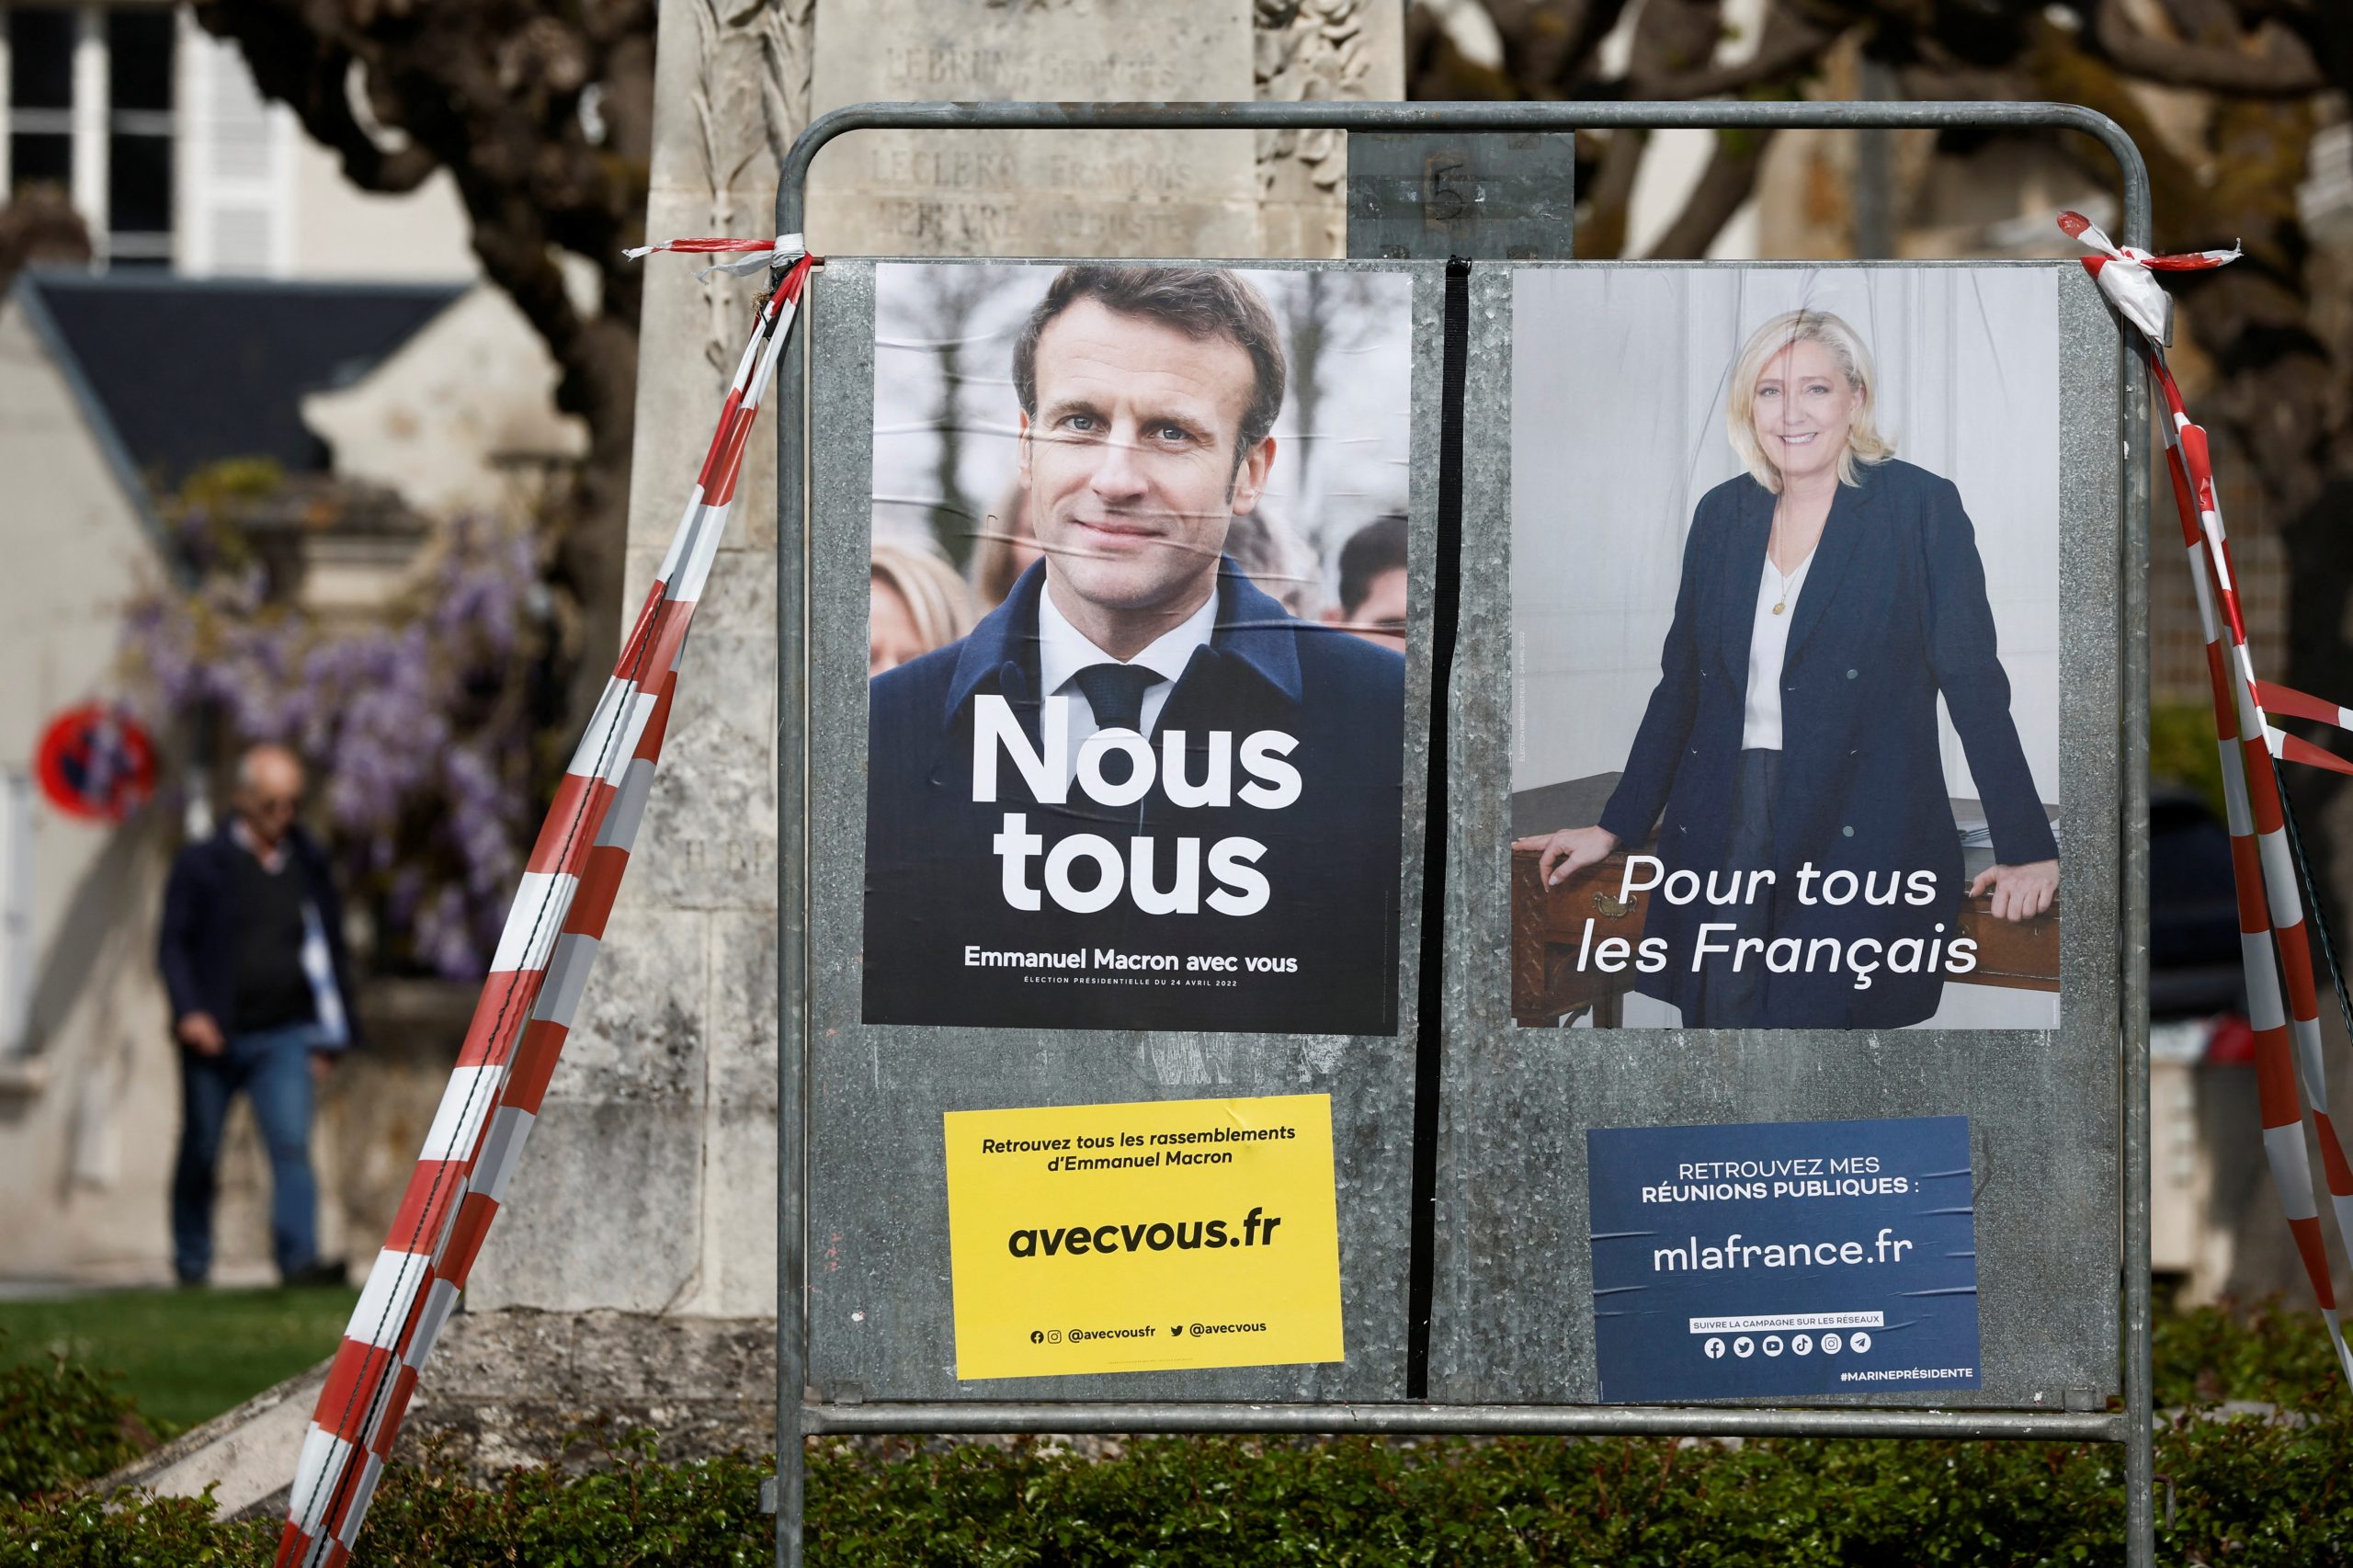 Macron in Le Pen